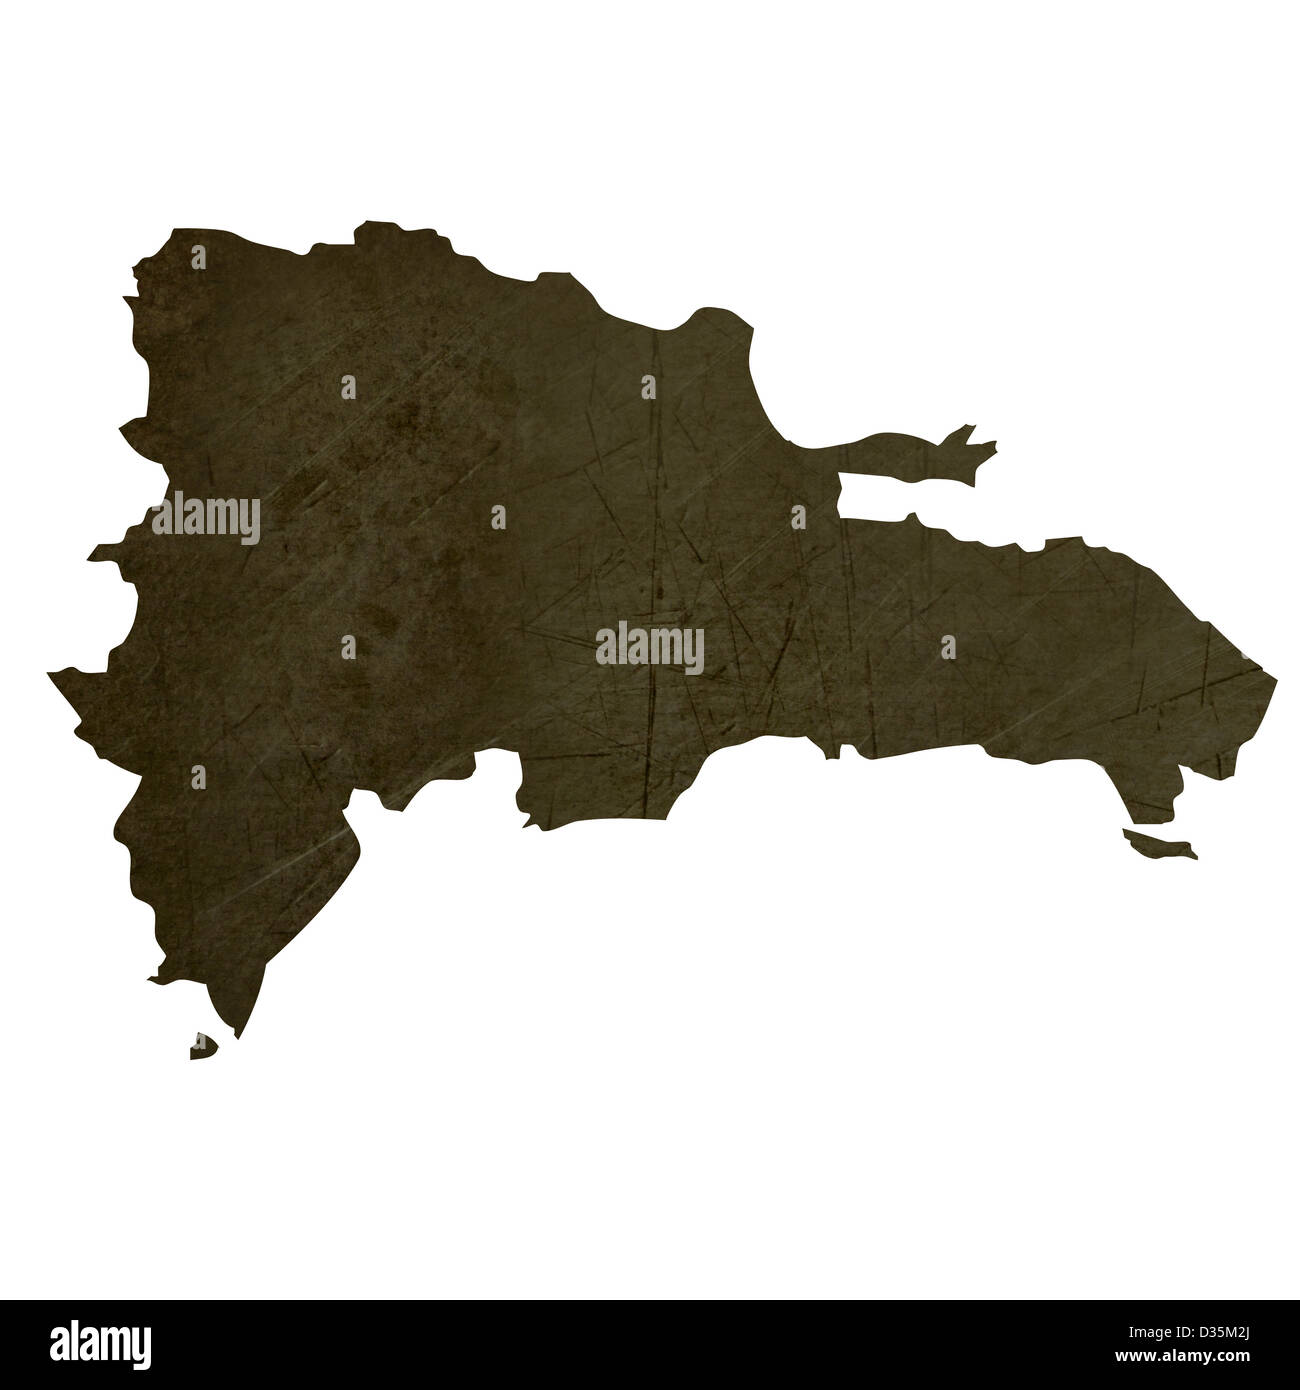 Dunkle Silhouette und strukturierte Karte der Dominikanischen Republik isoliert auf weißem Hintergrund. Stockfoto